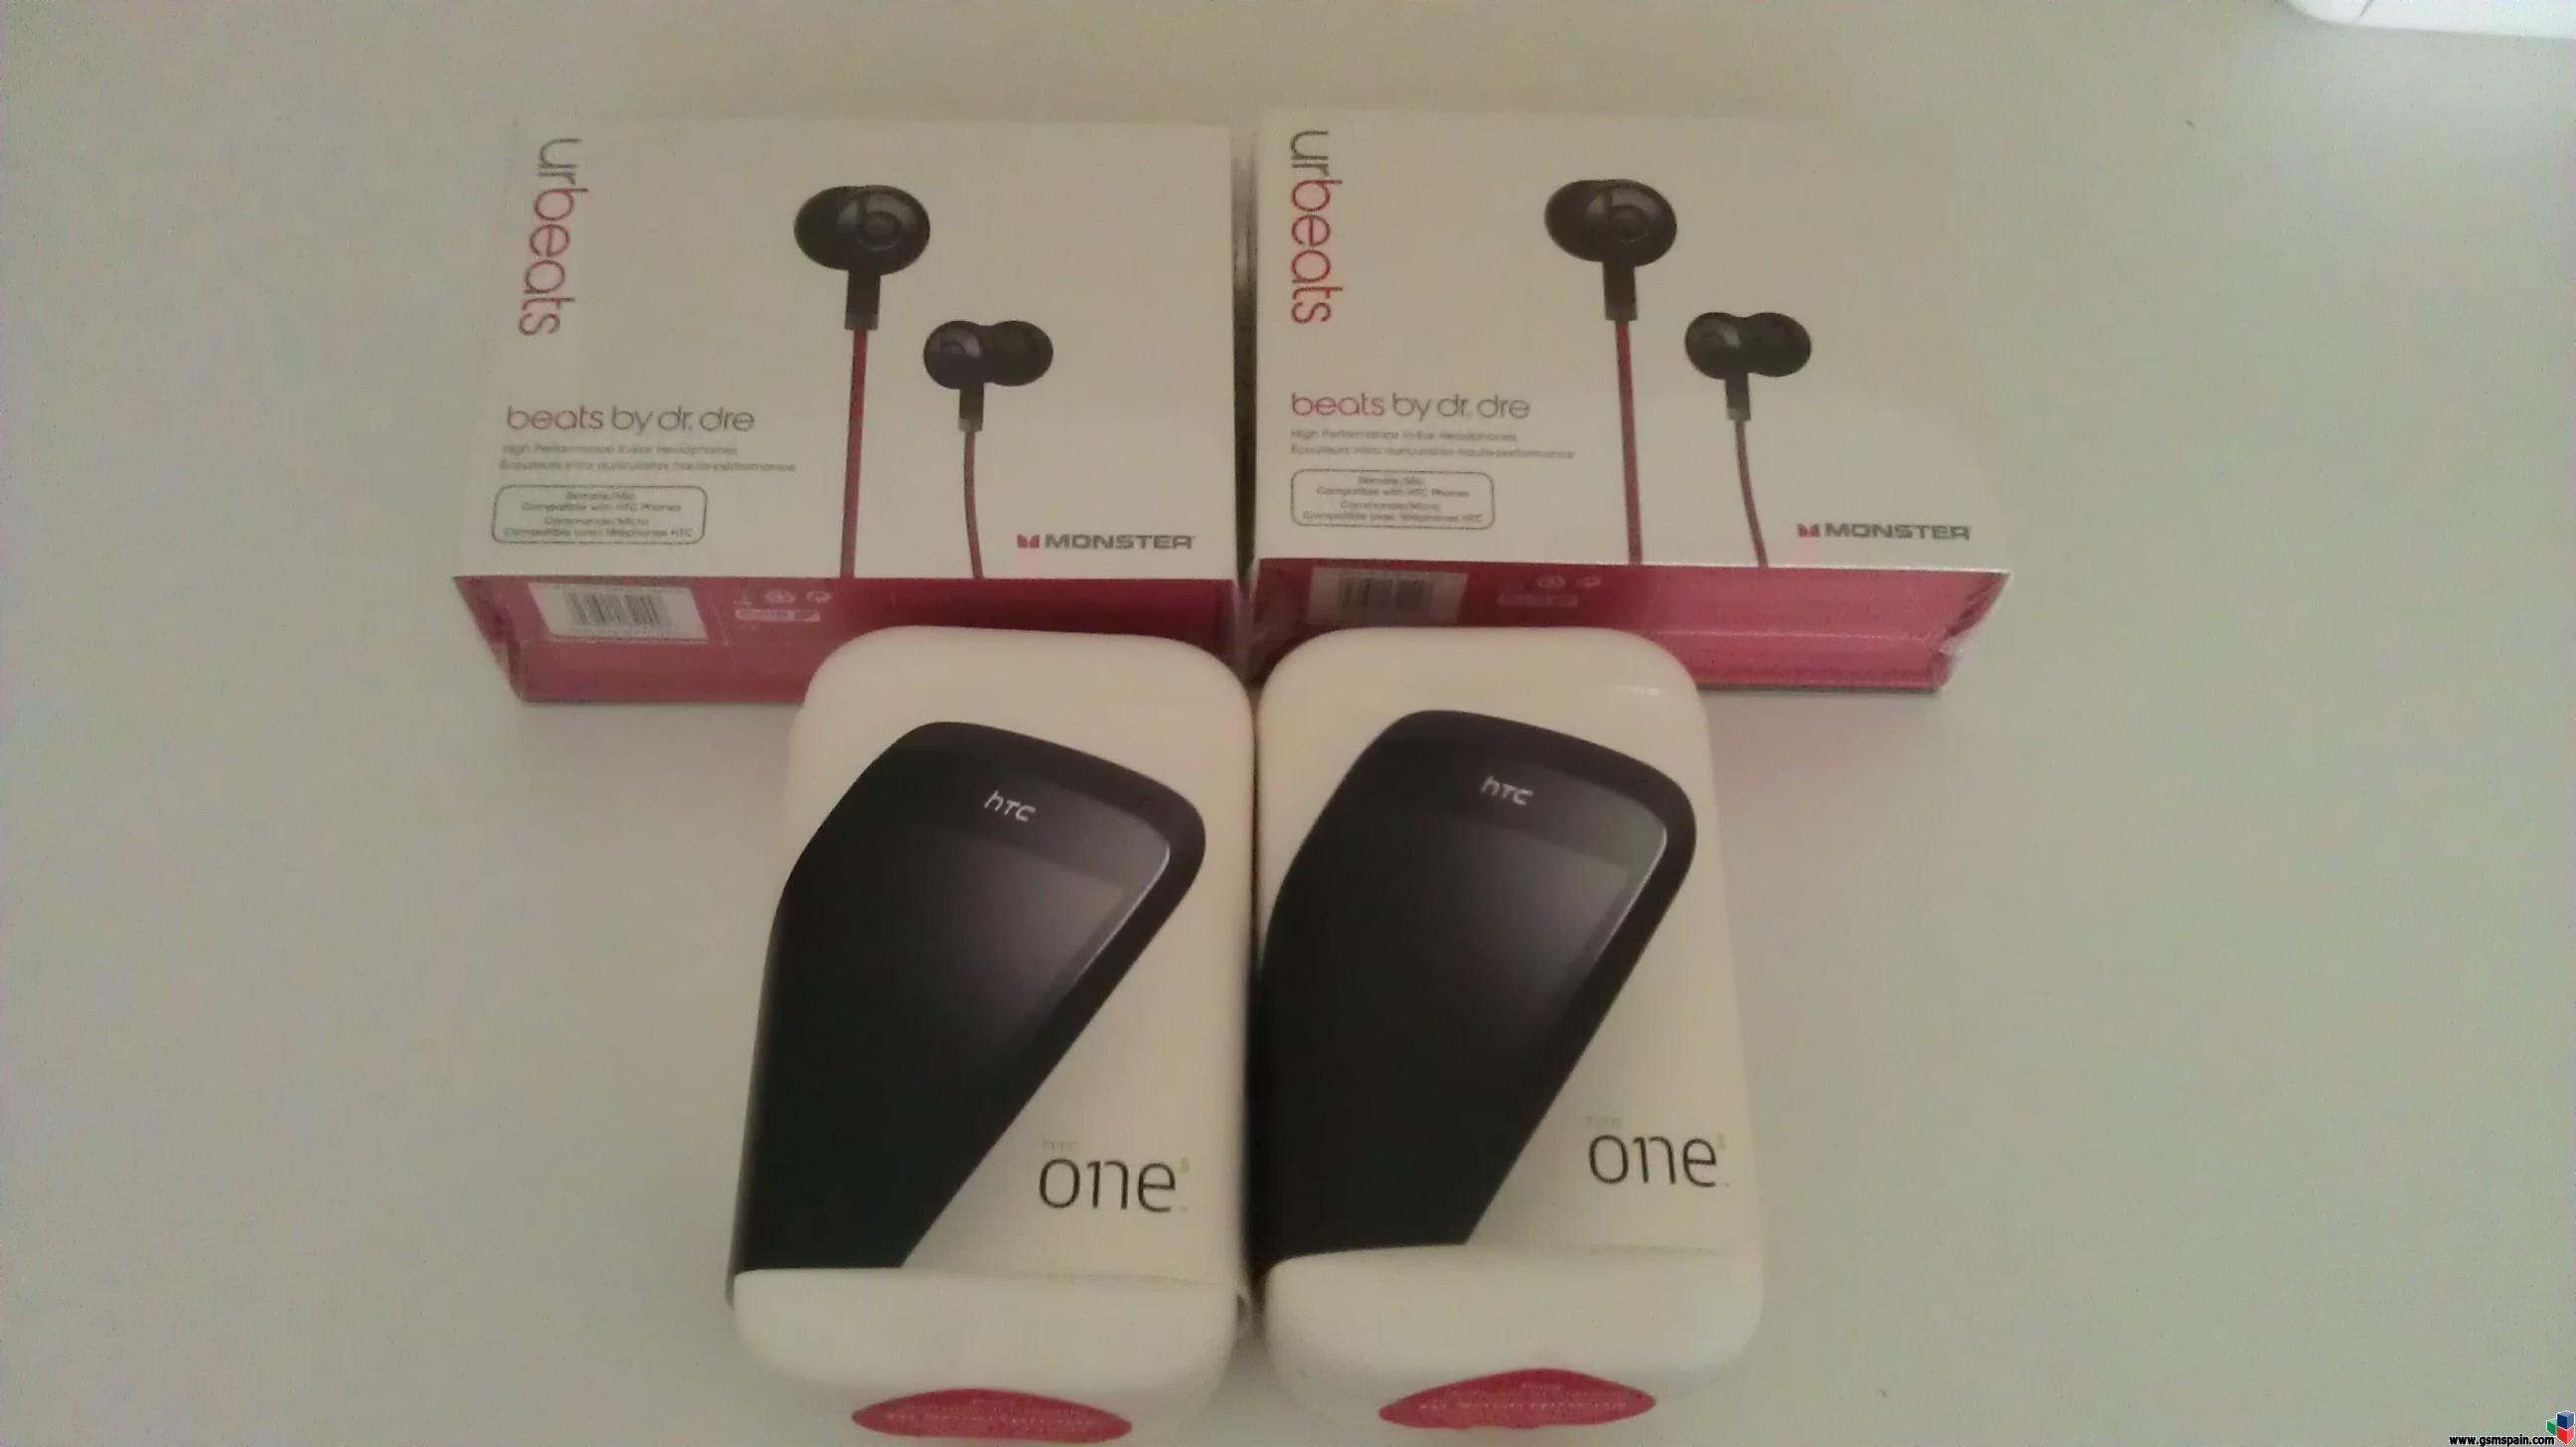 [VENDO] HTC ONE S Vodafone Precintado 375 con urBeats 405 envio incluido!! y factura